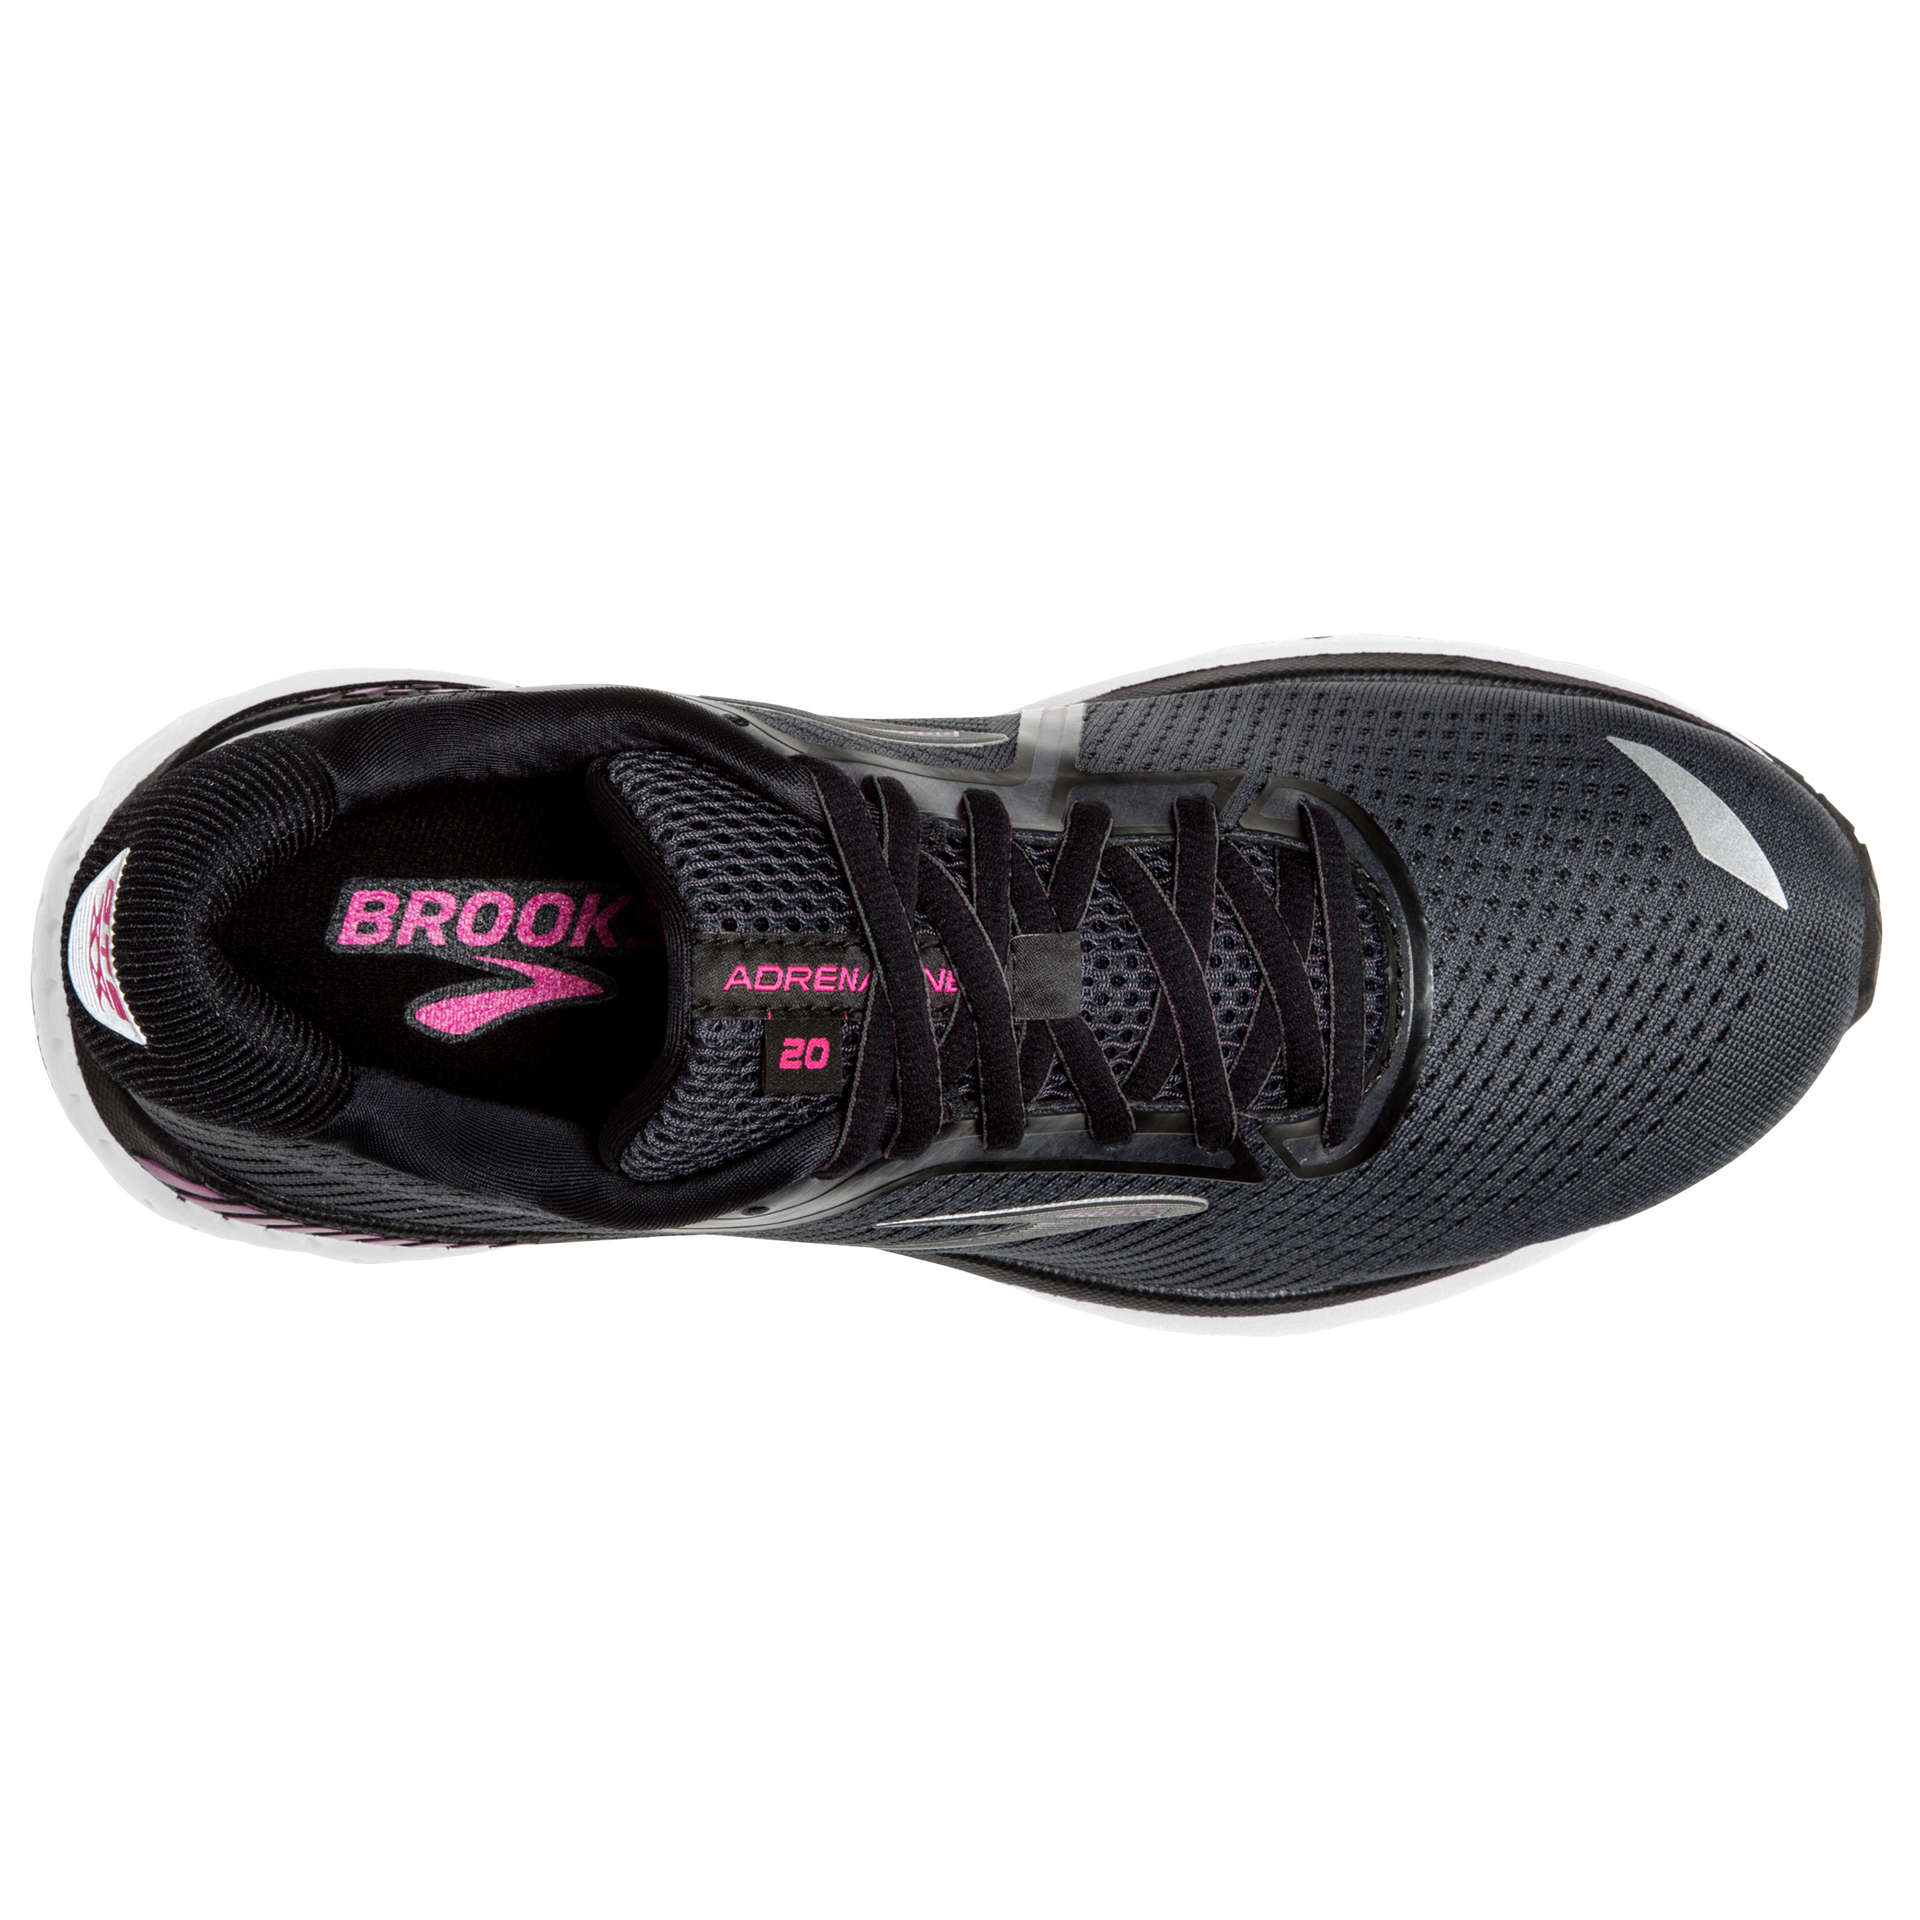 Brooks Adrenaline GTS 20 Hardloopschoenen Grijs/Paars Dames